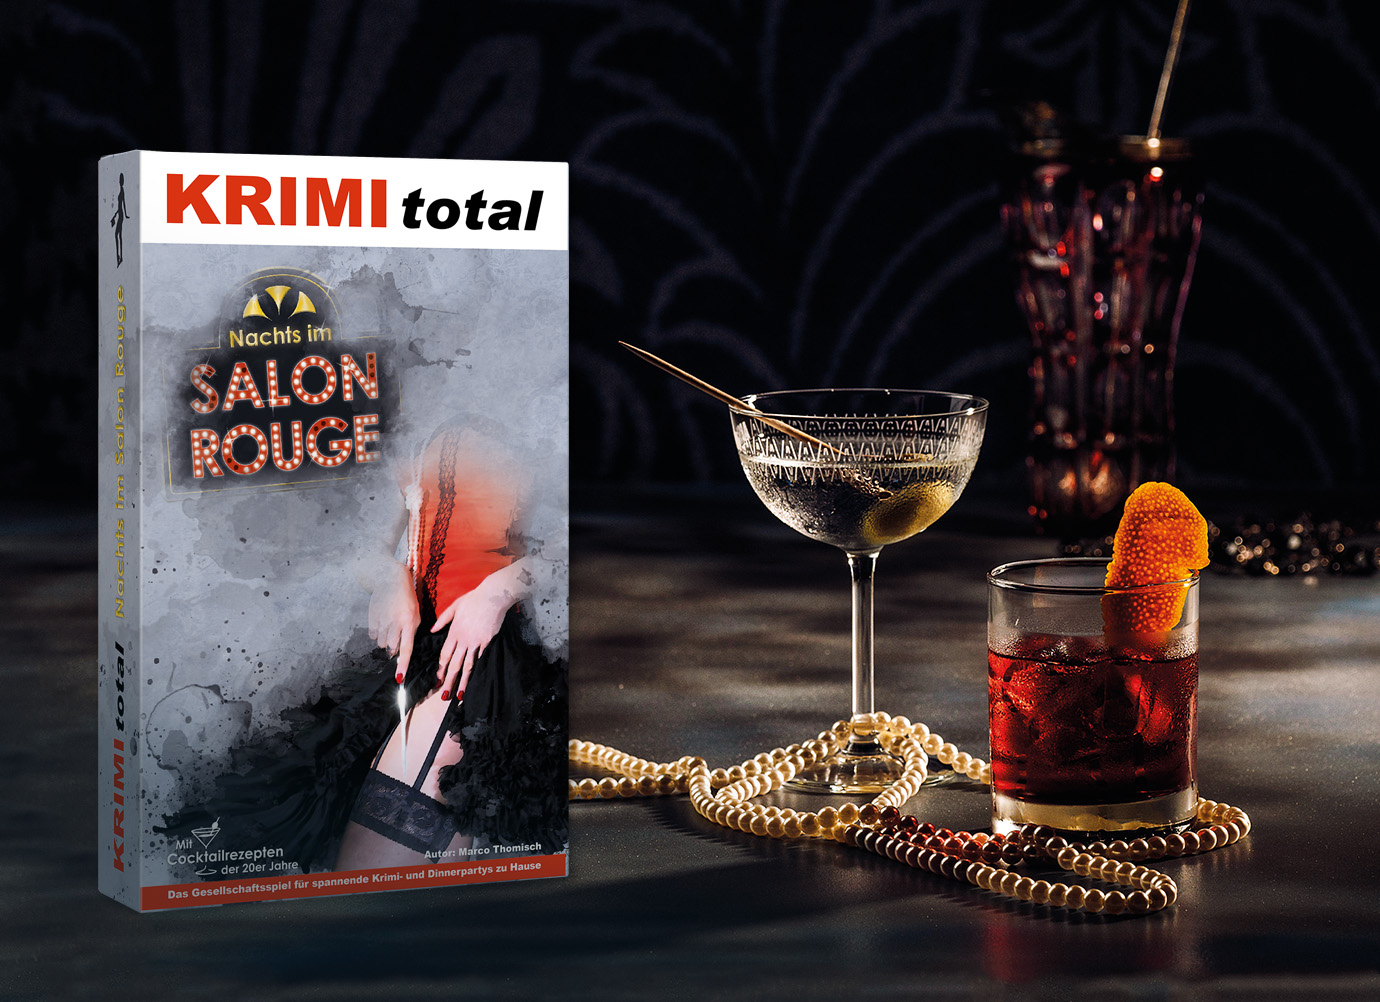 Krimidinner Cocktail-Rezept von "Nachts im Salon Rouge"